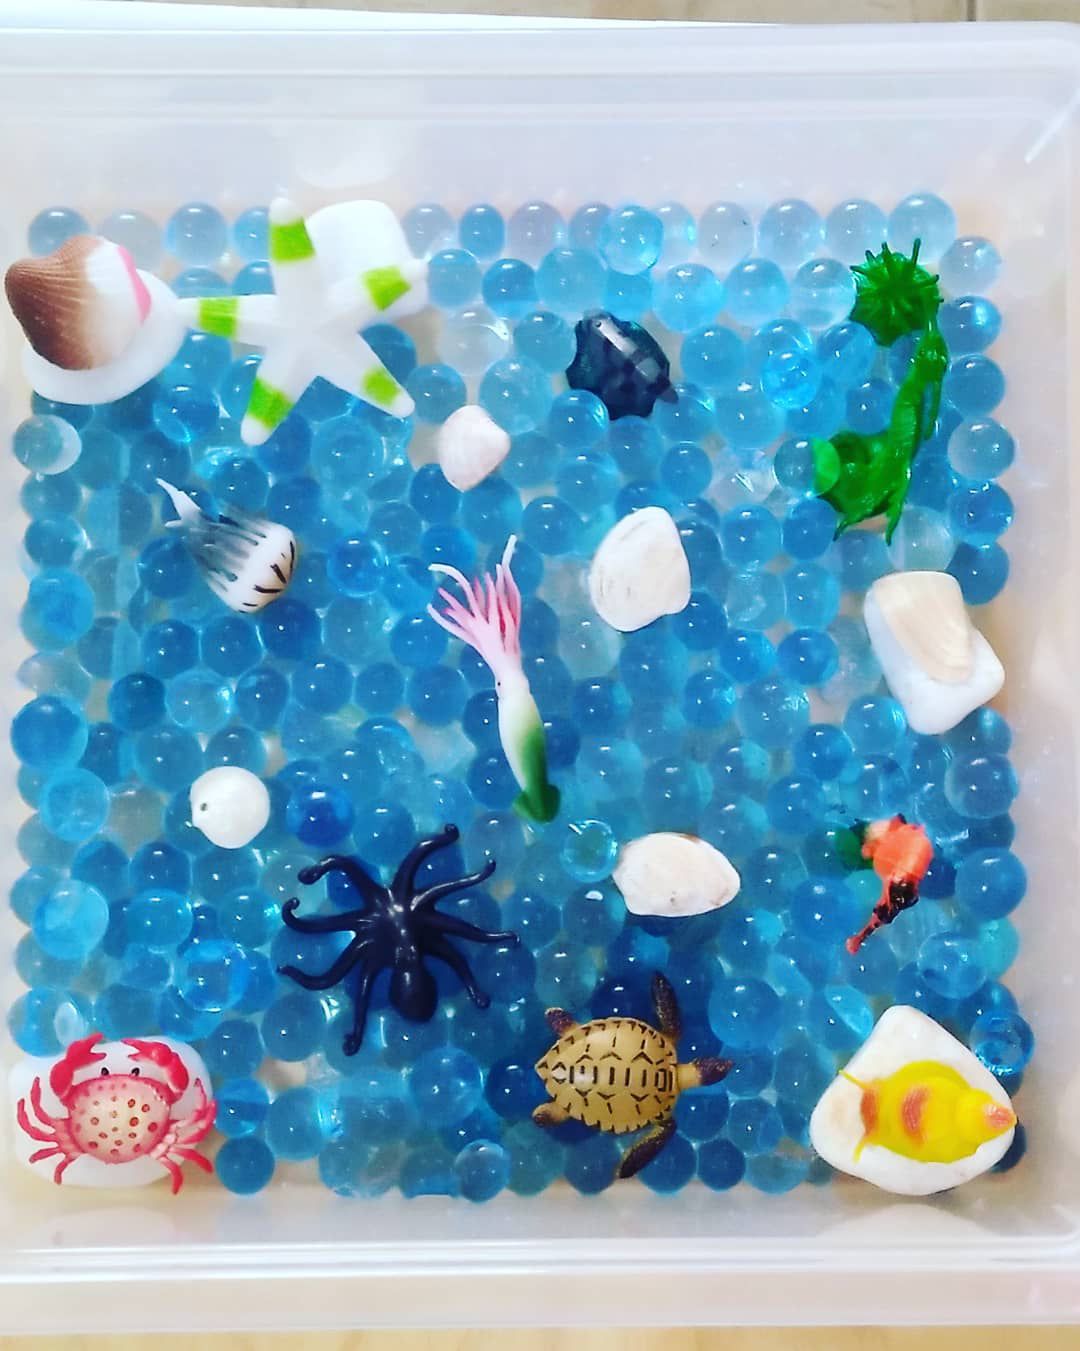 Brincar com bolinhas de gel coloridas - Water Beads